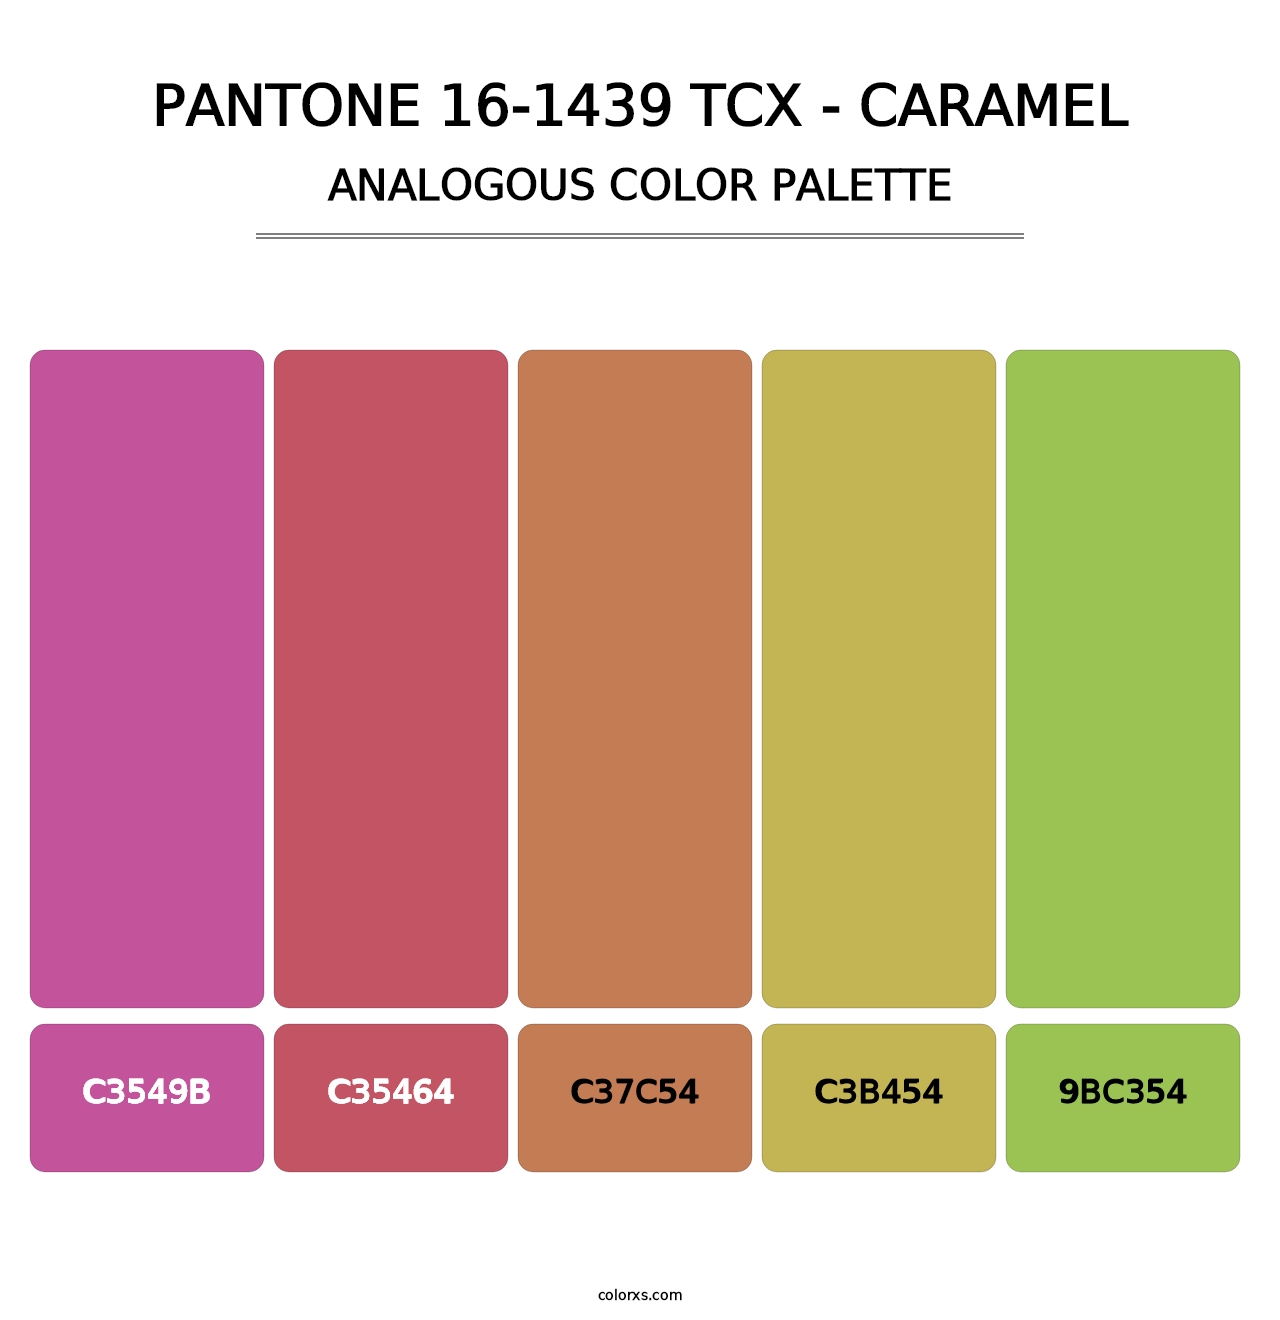 PANTONE 16-1439 TCX - Caramel - Analogous Color Palette